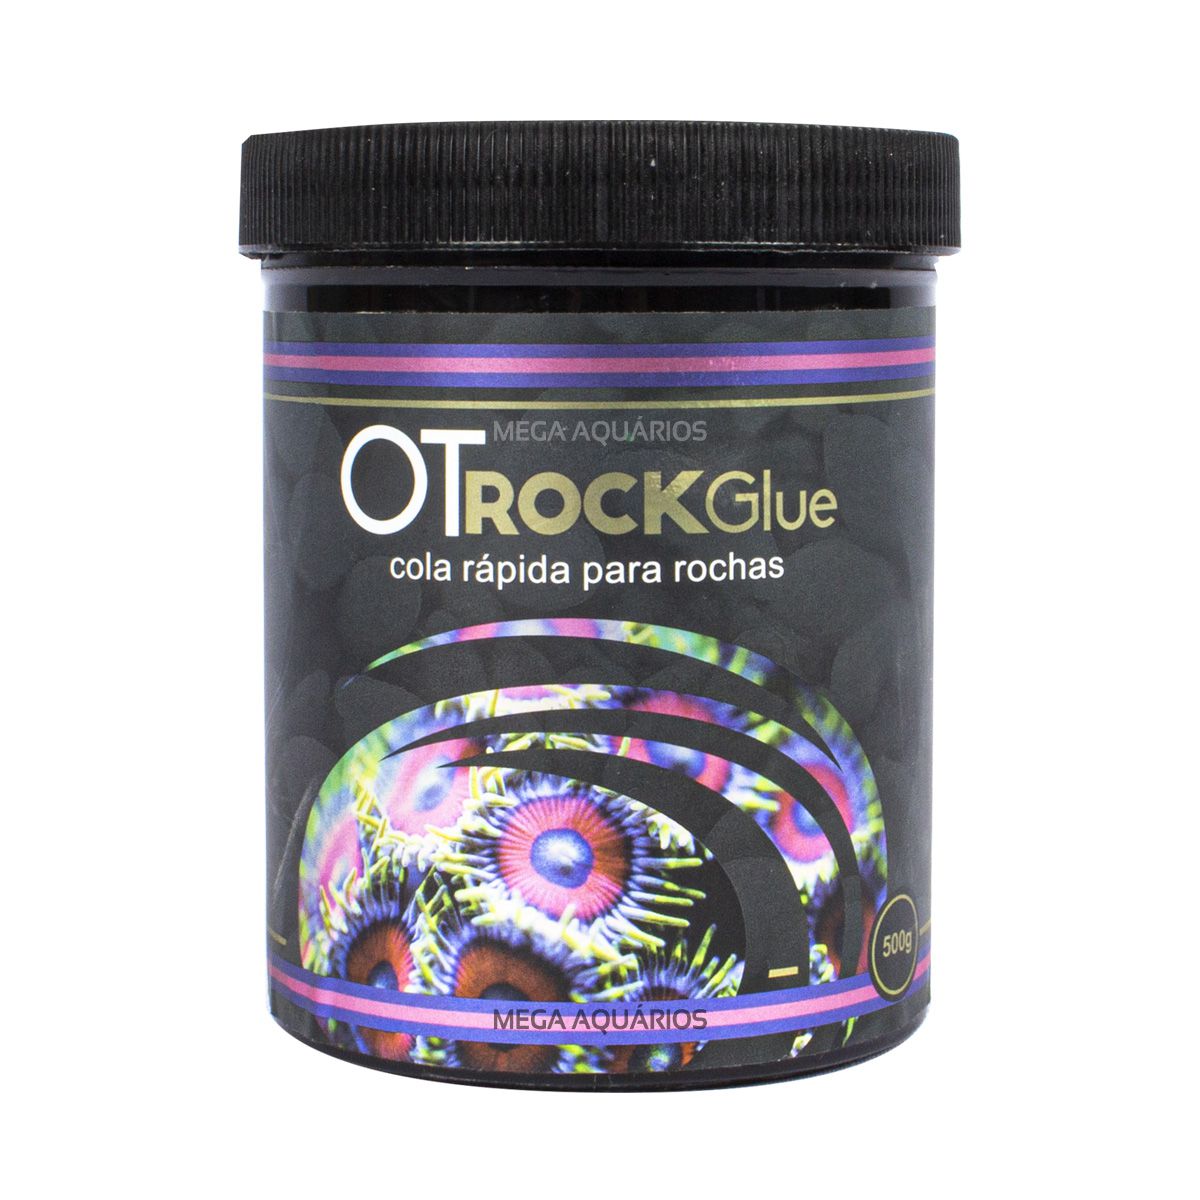 Ot Rock Glue cola rápida para rochas aquário OceanTech 500g OTrockGlue -  Mega Aquários